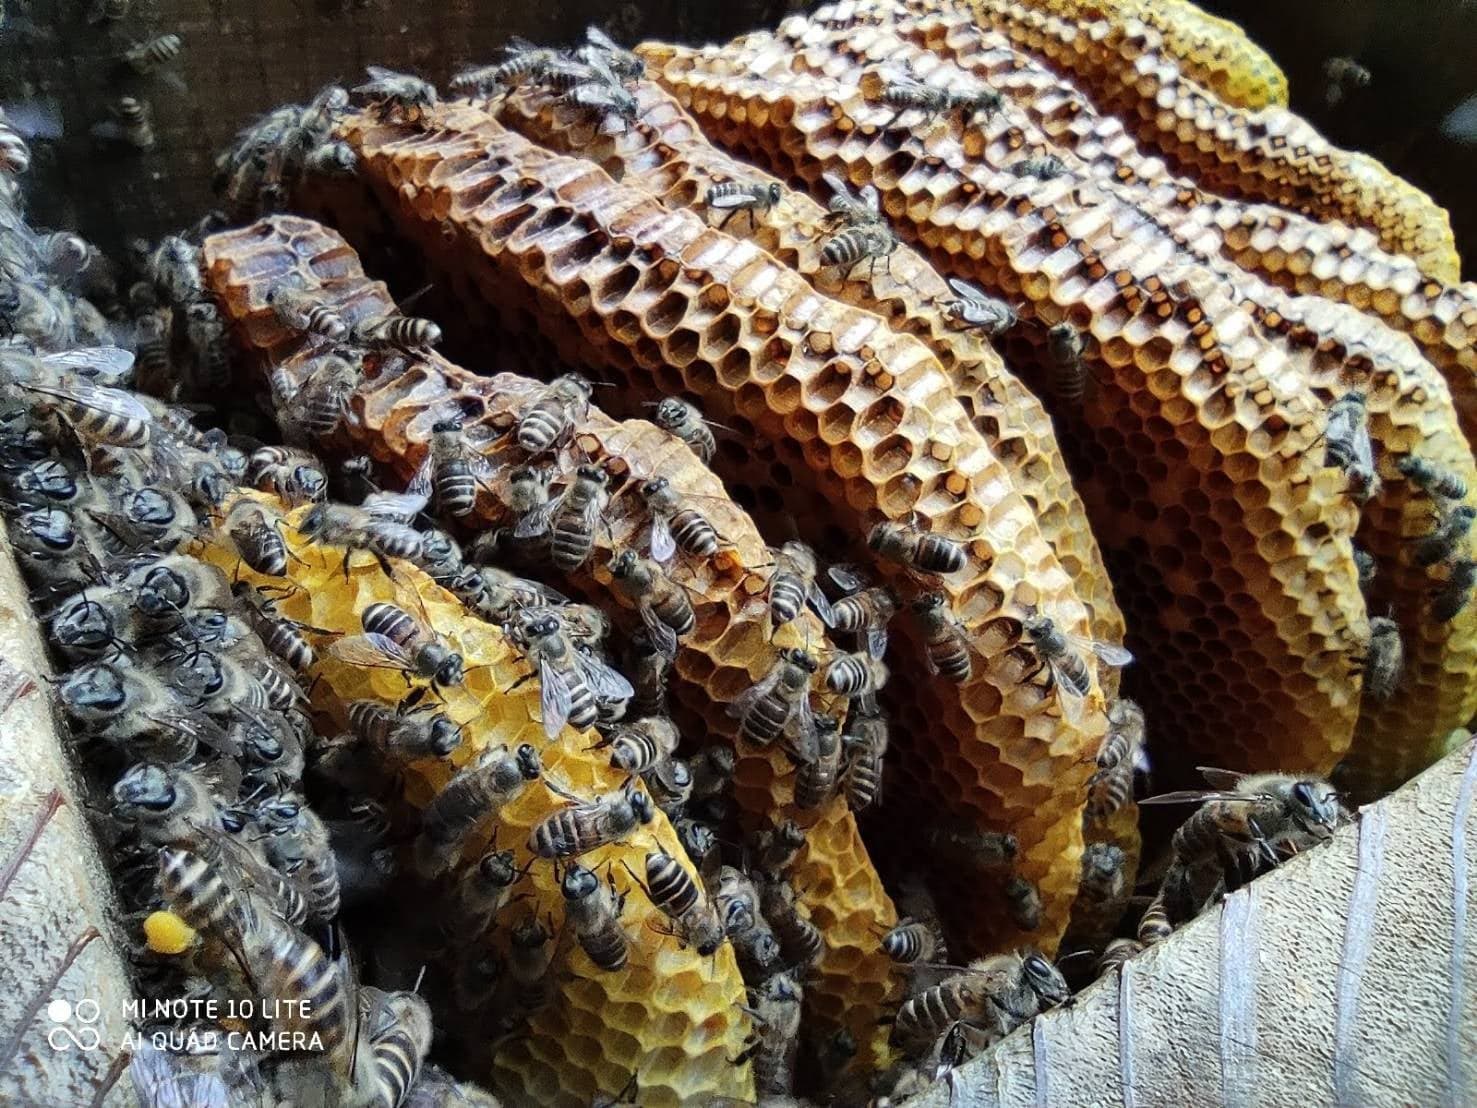 バイクのスタントマンから、日本蜜蜂専門の蜜蜂農家へ。直感を信じて切り開く新たなライフスタイル。